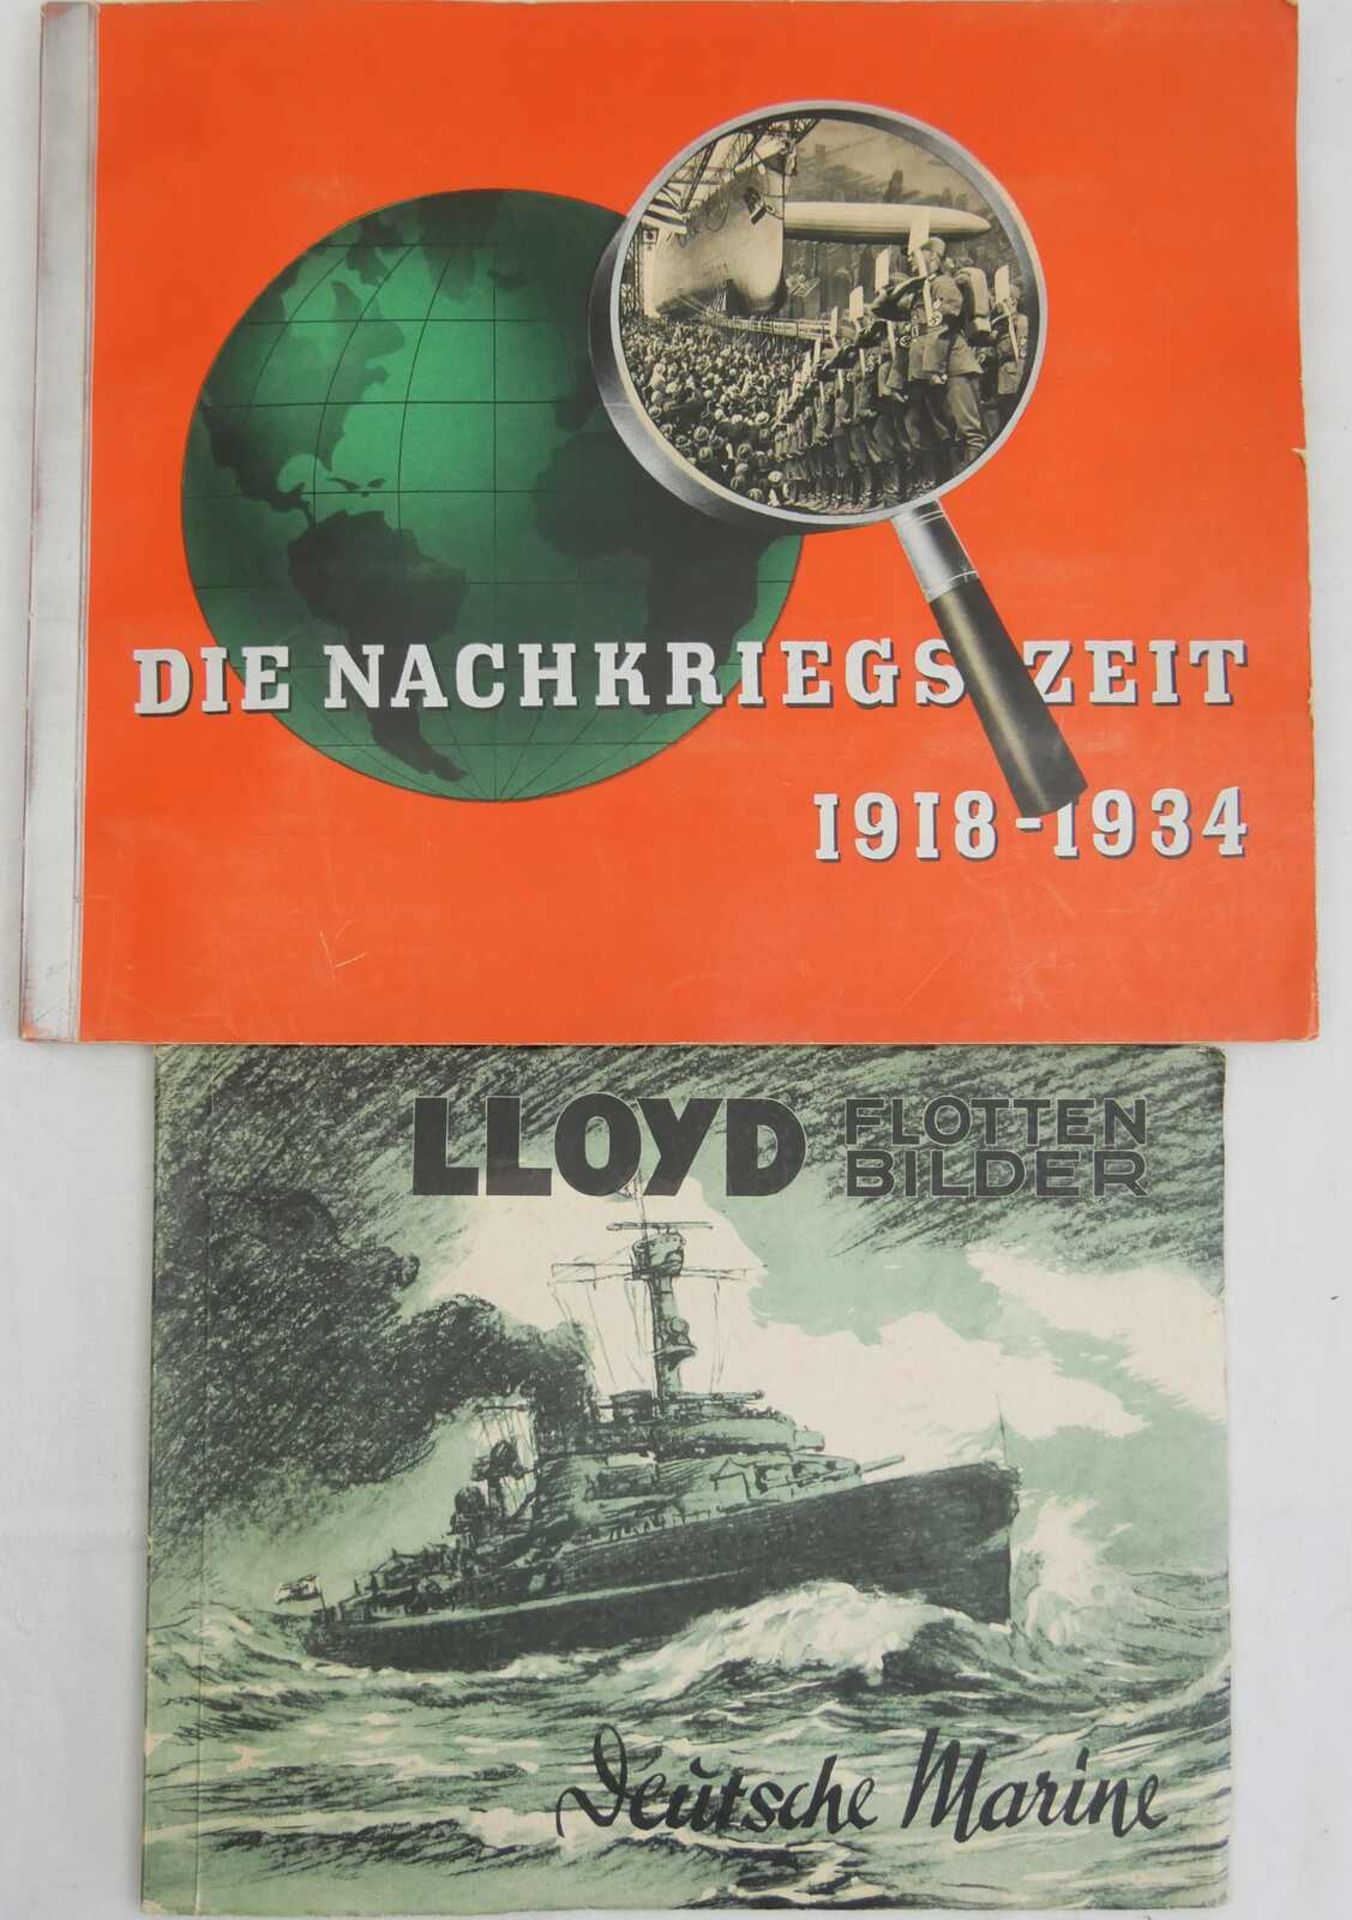 2 Zigarettenbilder Alben - Die Nachkriegszeit 1918-1934 und Lloyd Flottenbilder Deutsche Marine.